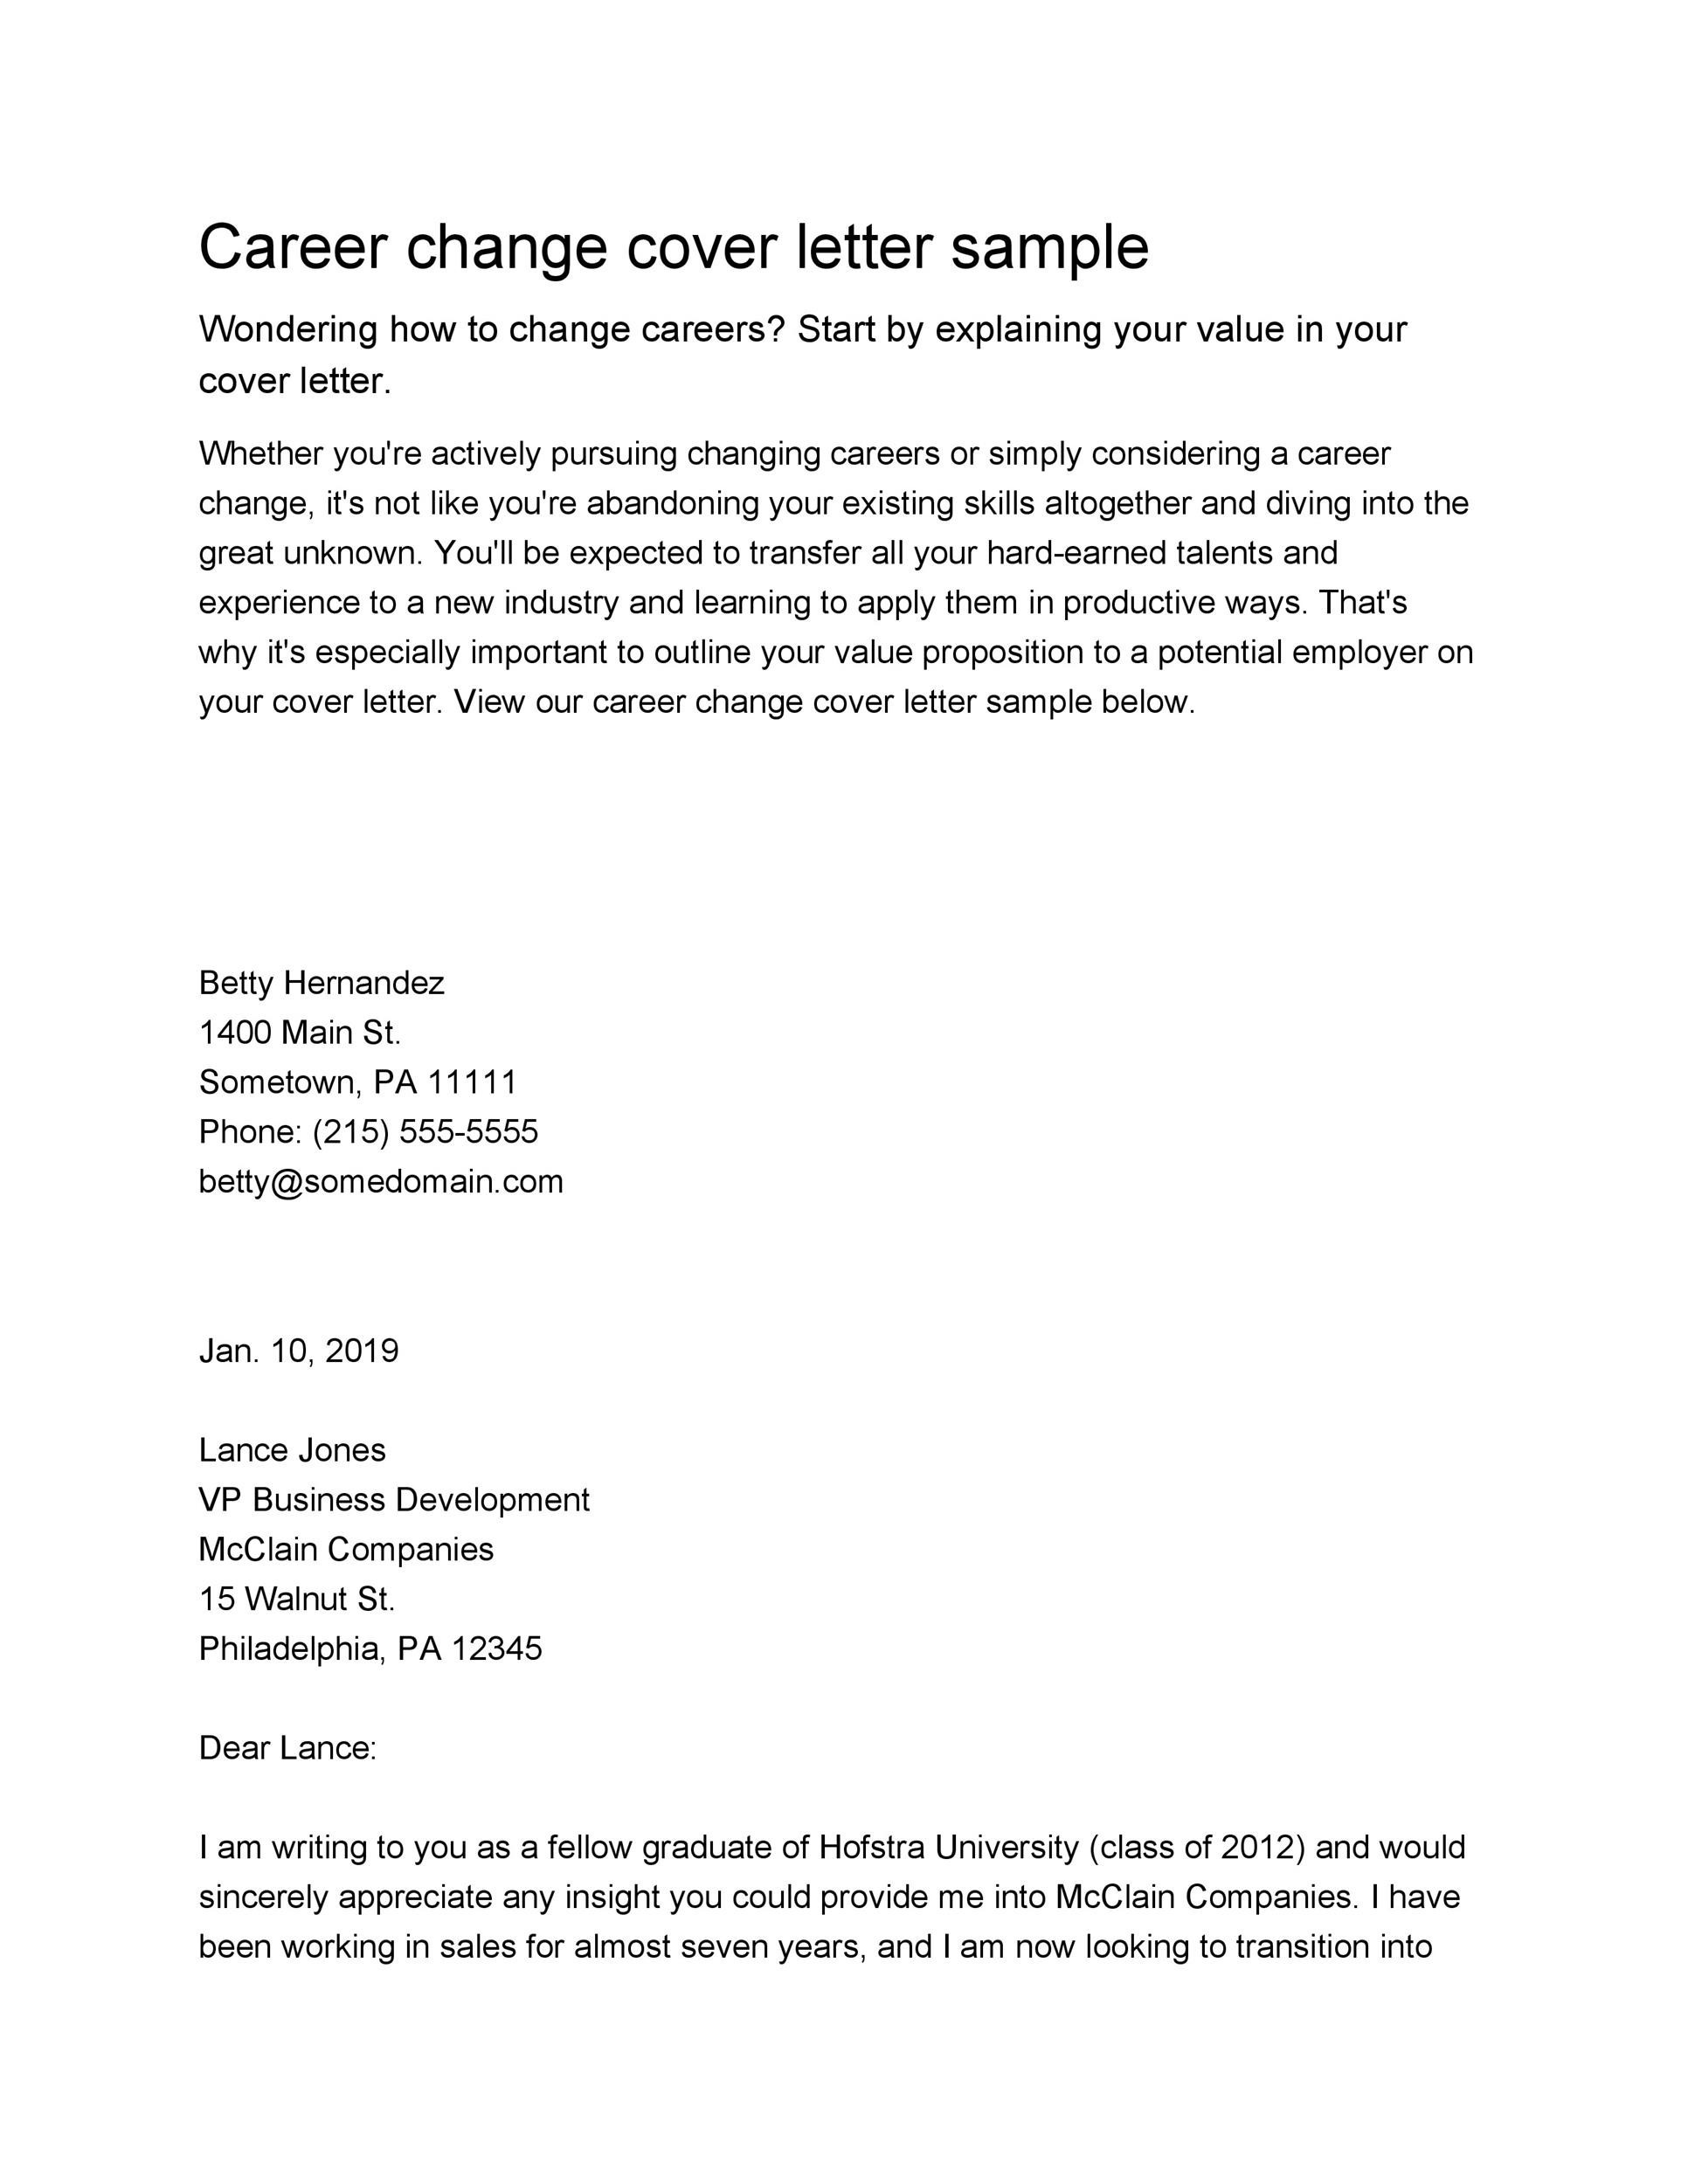 career change cover letter sample australia